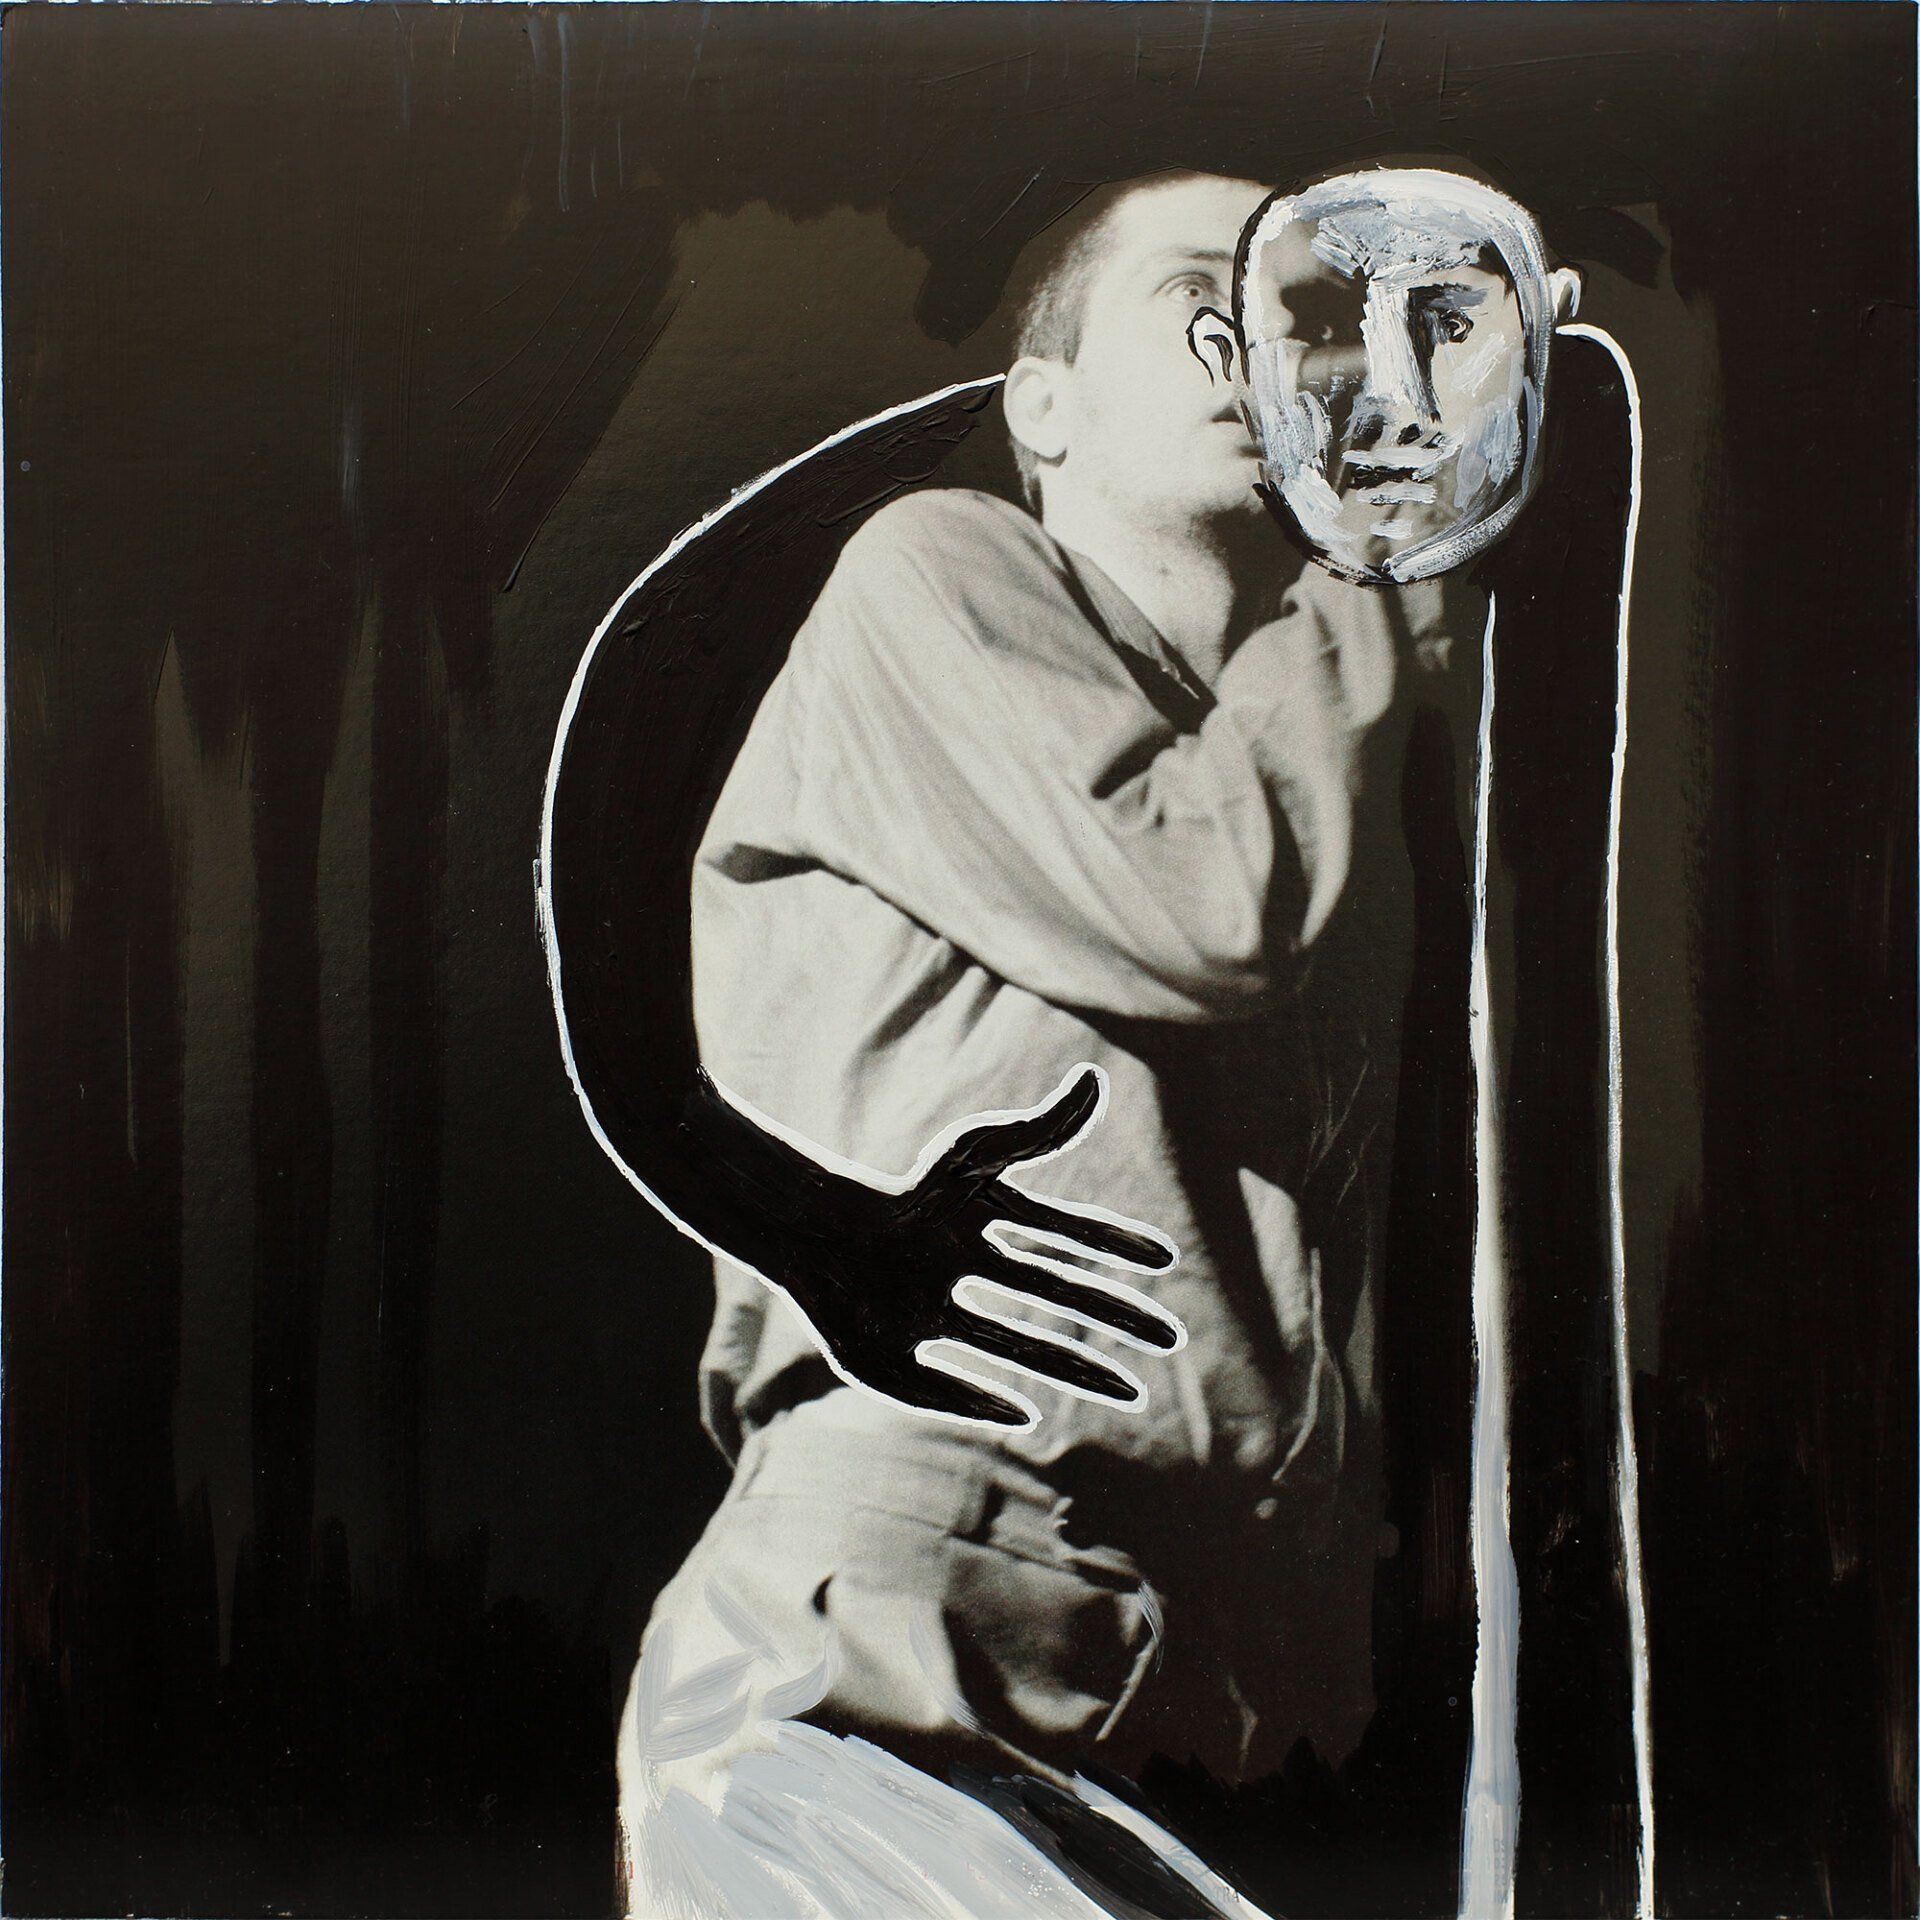 „Ghost Rider No. 8“ (Ian Curtis/Joy Division) by Sebastian Bieniek (B1EN1EK), 2019. Oil on original LP cover, 31,5 cm. x 30 cm. Bieniek-Paint (overpainted medium) from the oeuvre of Bieniek-Face (BieniekFace) by the artist.